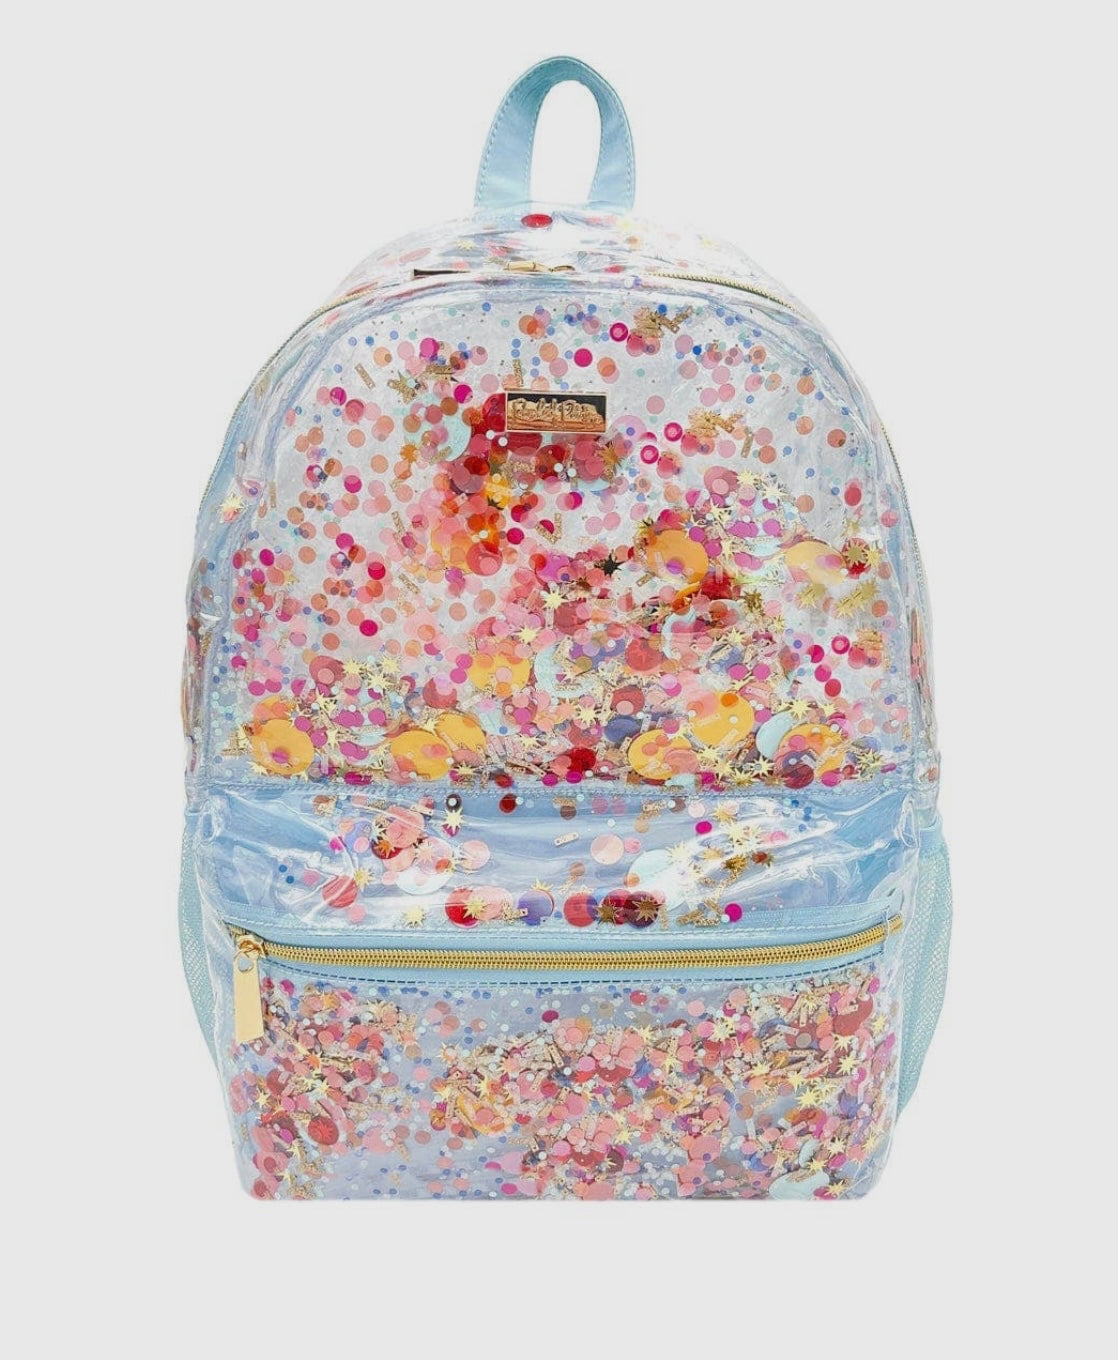 Celebrate Confetti Backpack